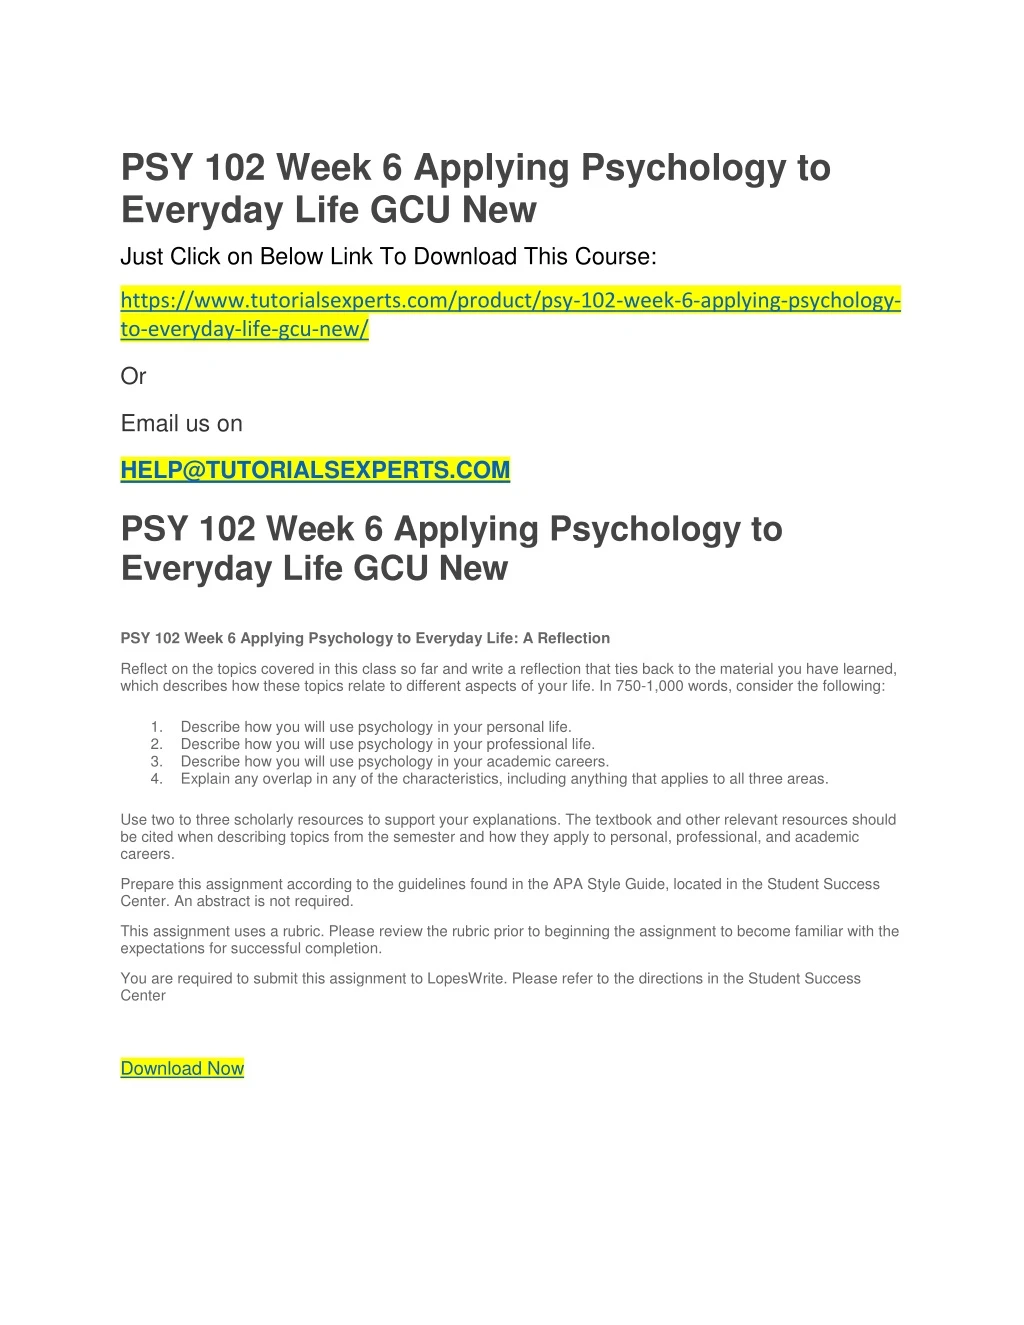 psy 102 week 6 applying psychology to everyday